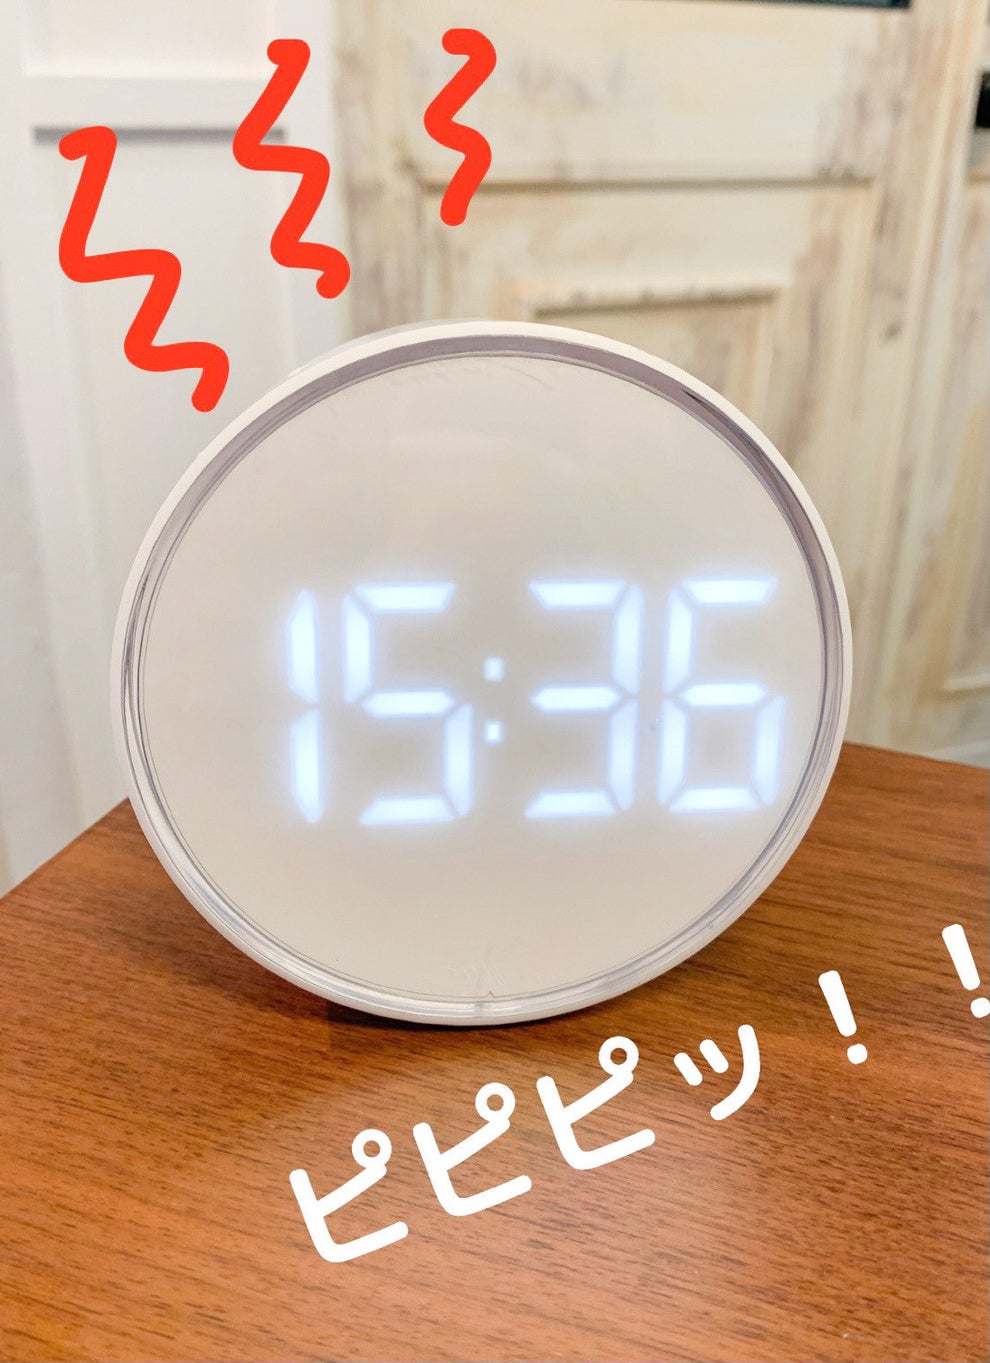 はー、IKEAさすがだよ。シンプルデザインの「目覚まし時計」このオシャレさで999円はすごいって…。